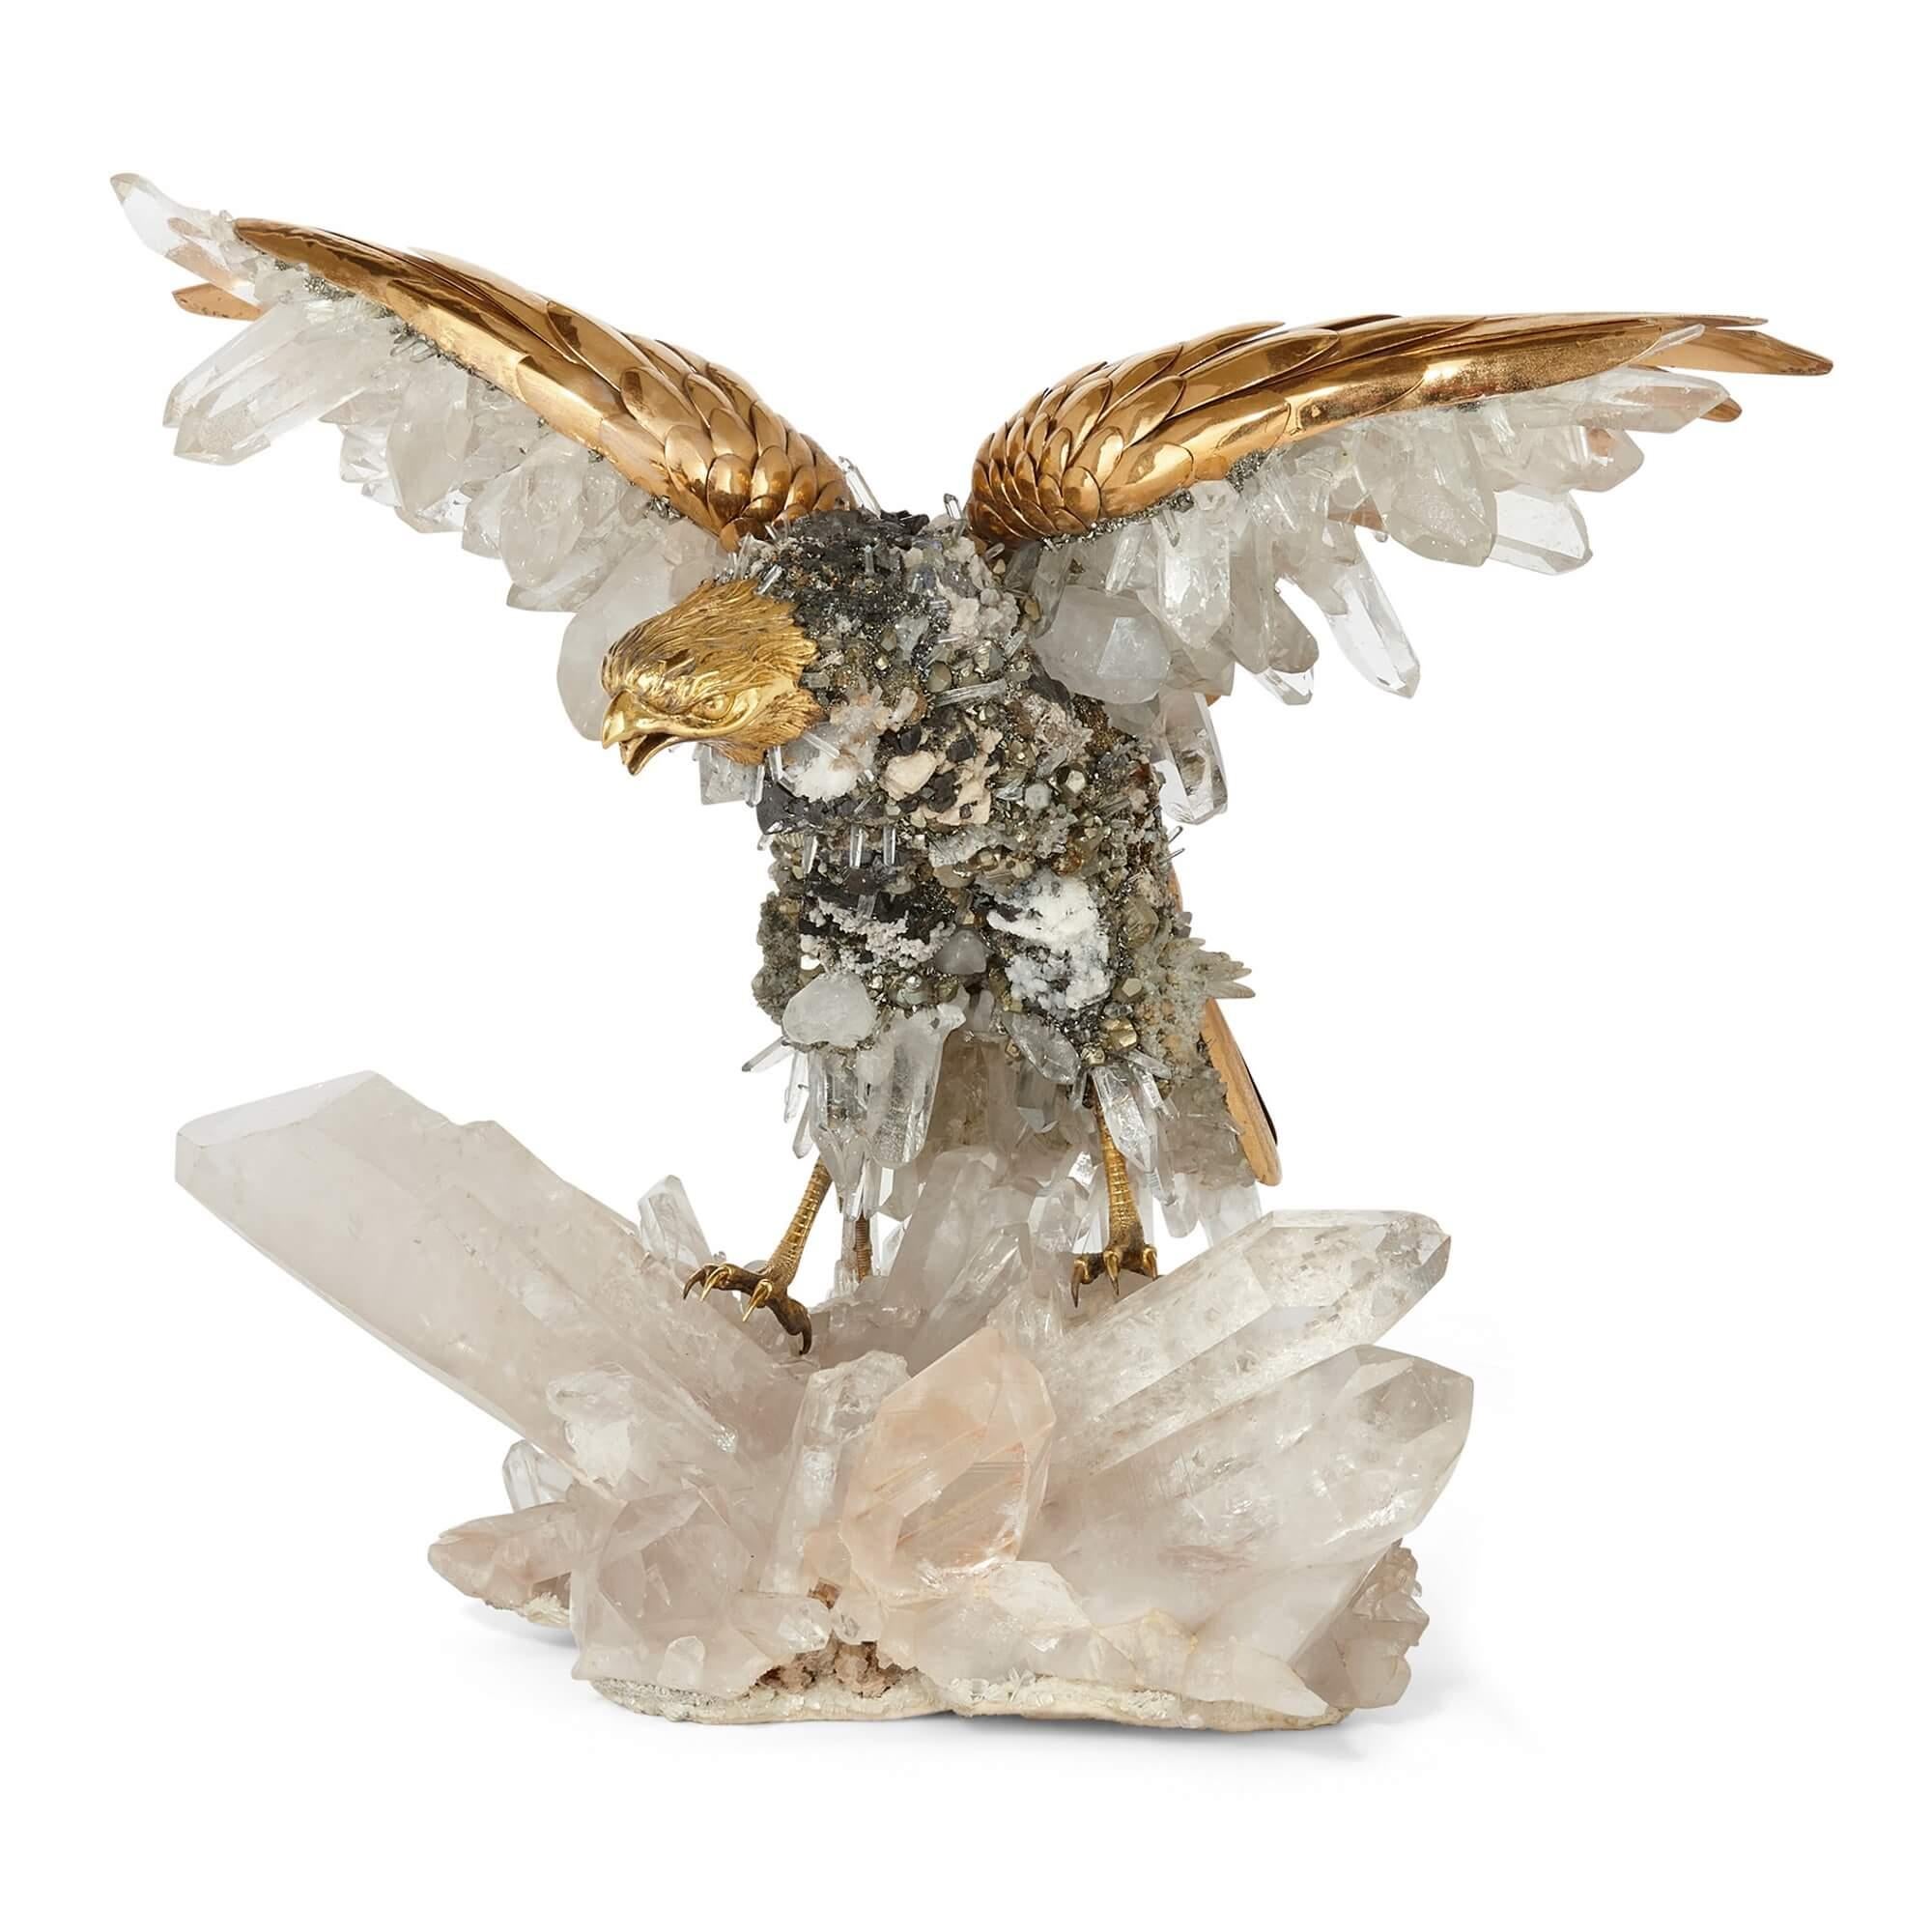 Grand modèle d'oiseau en cristal de quartz et vermeil par Asprey
Suisse, C.C. 1975
Hauteur 40cm, largeur 33cm, profondeur 40cm

Cette sculpture phénoménale représente un aigle en mouvement, s'envolant d'un rocher en cristal de quartz. 

Le corps de